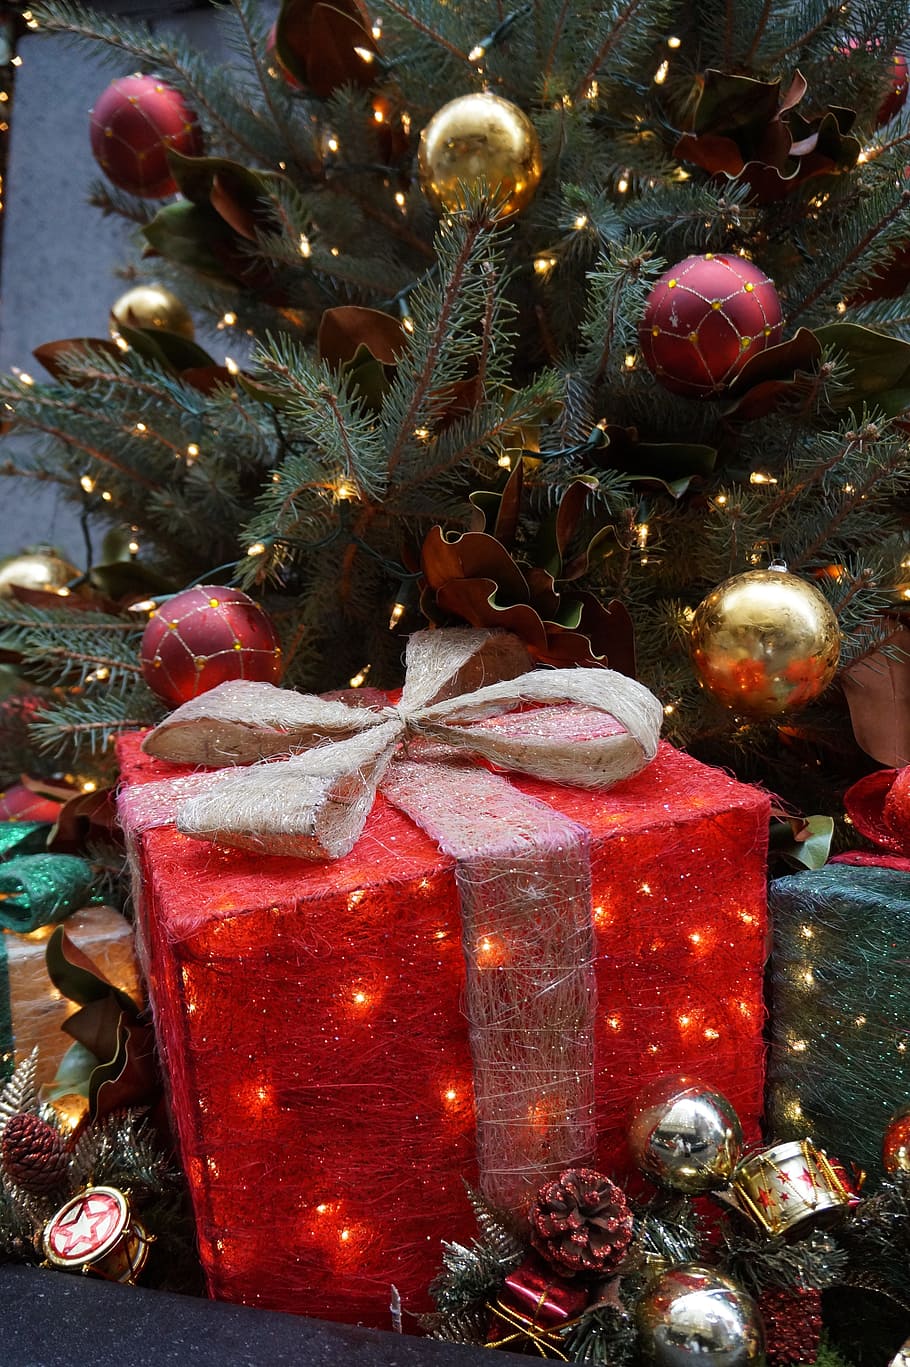 merah, hadiah, di samping, hijau, pohon natal, natal, musim dingin, new york, dekorasi natal, liburan